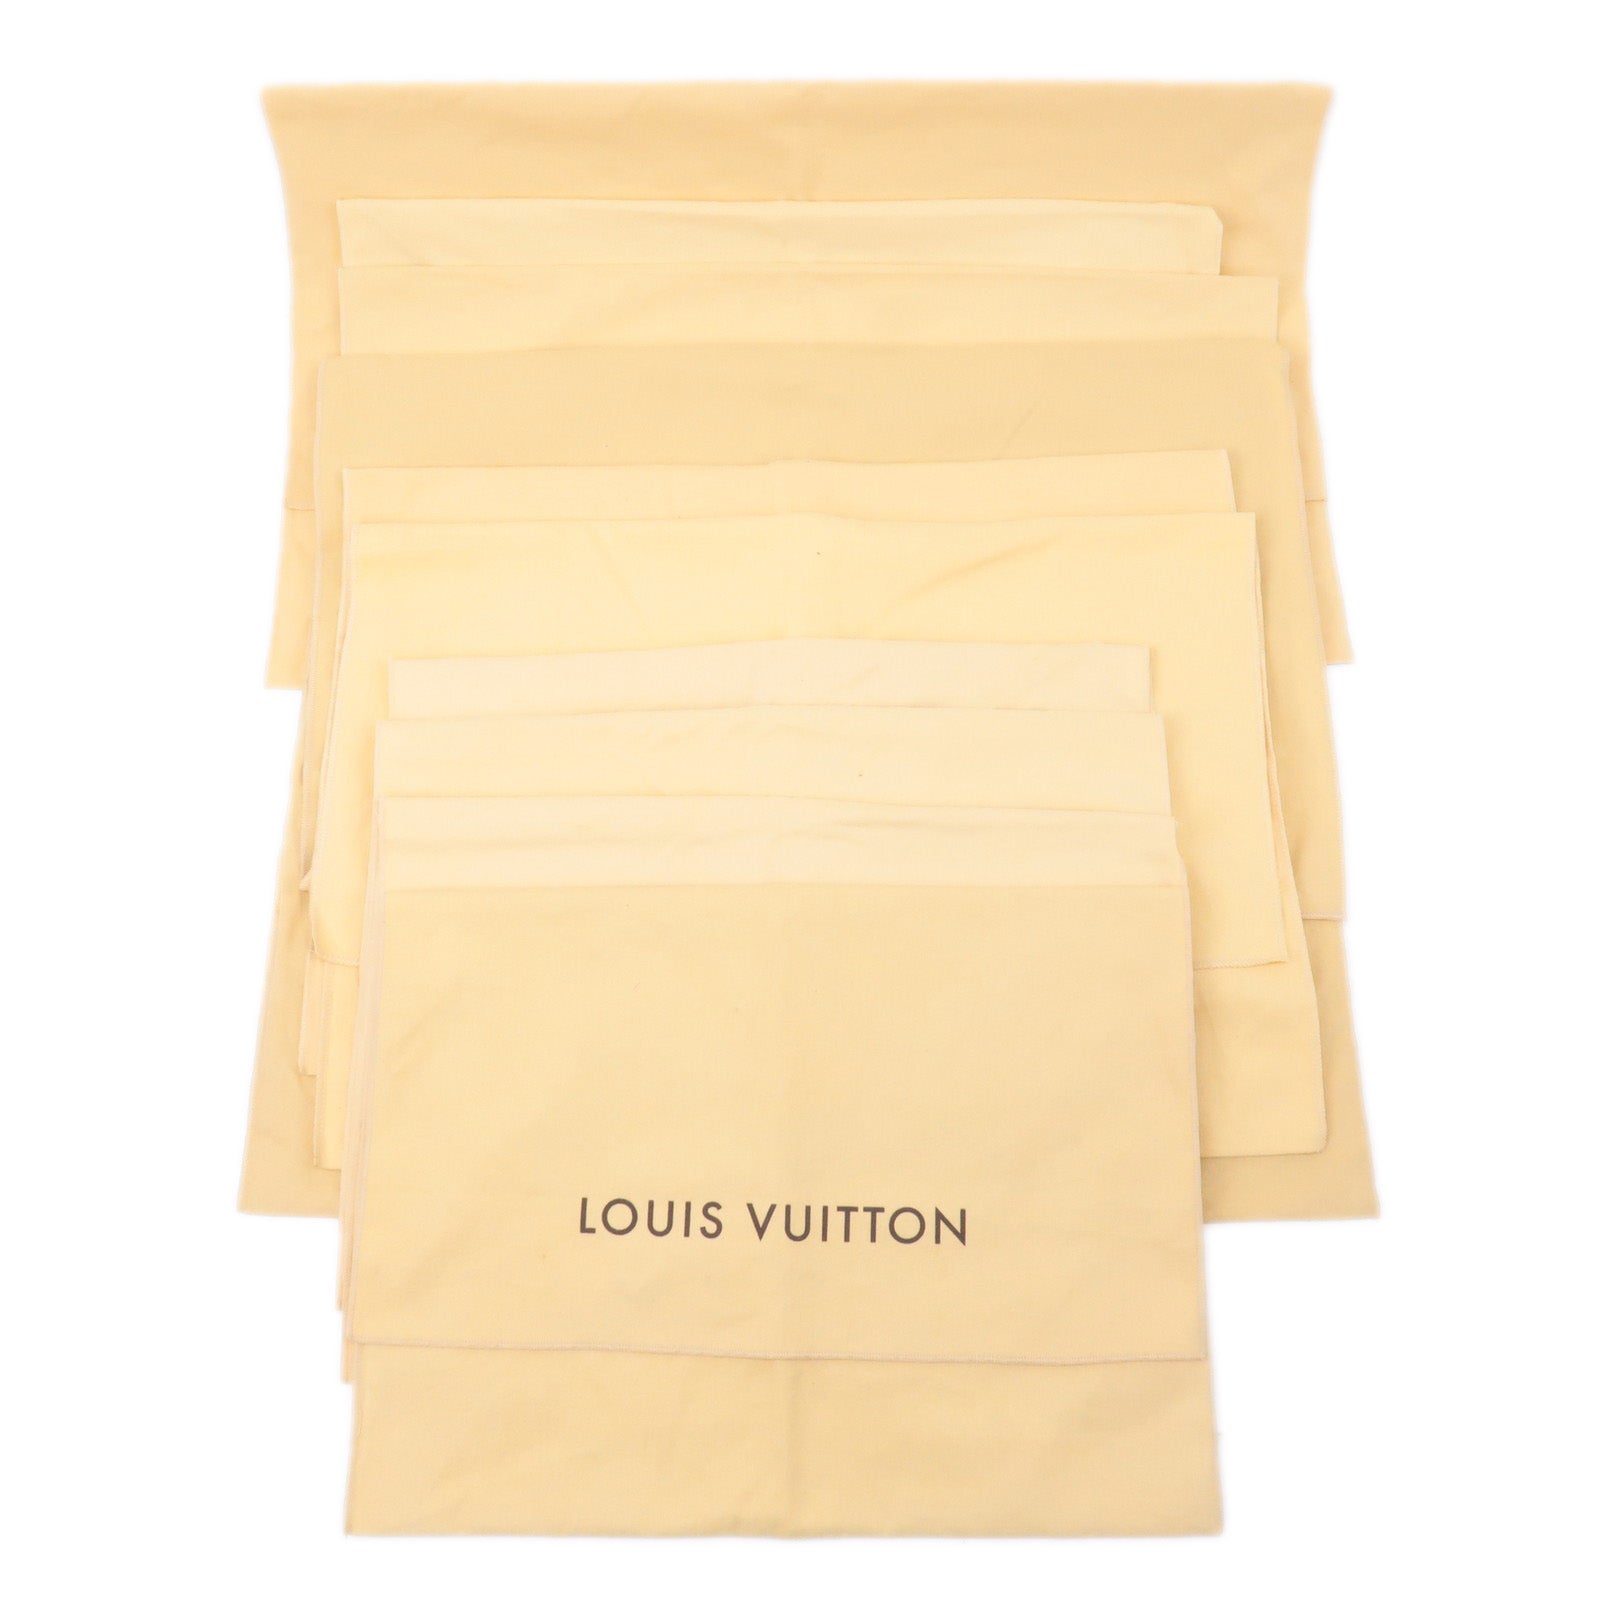 ep_vintage luxury Store - Set - louis vuitton twist handbag in blue leather  - Dust - Bag - 9 - of - Style - Louis - Vuitton - Beige – dct - Flap